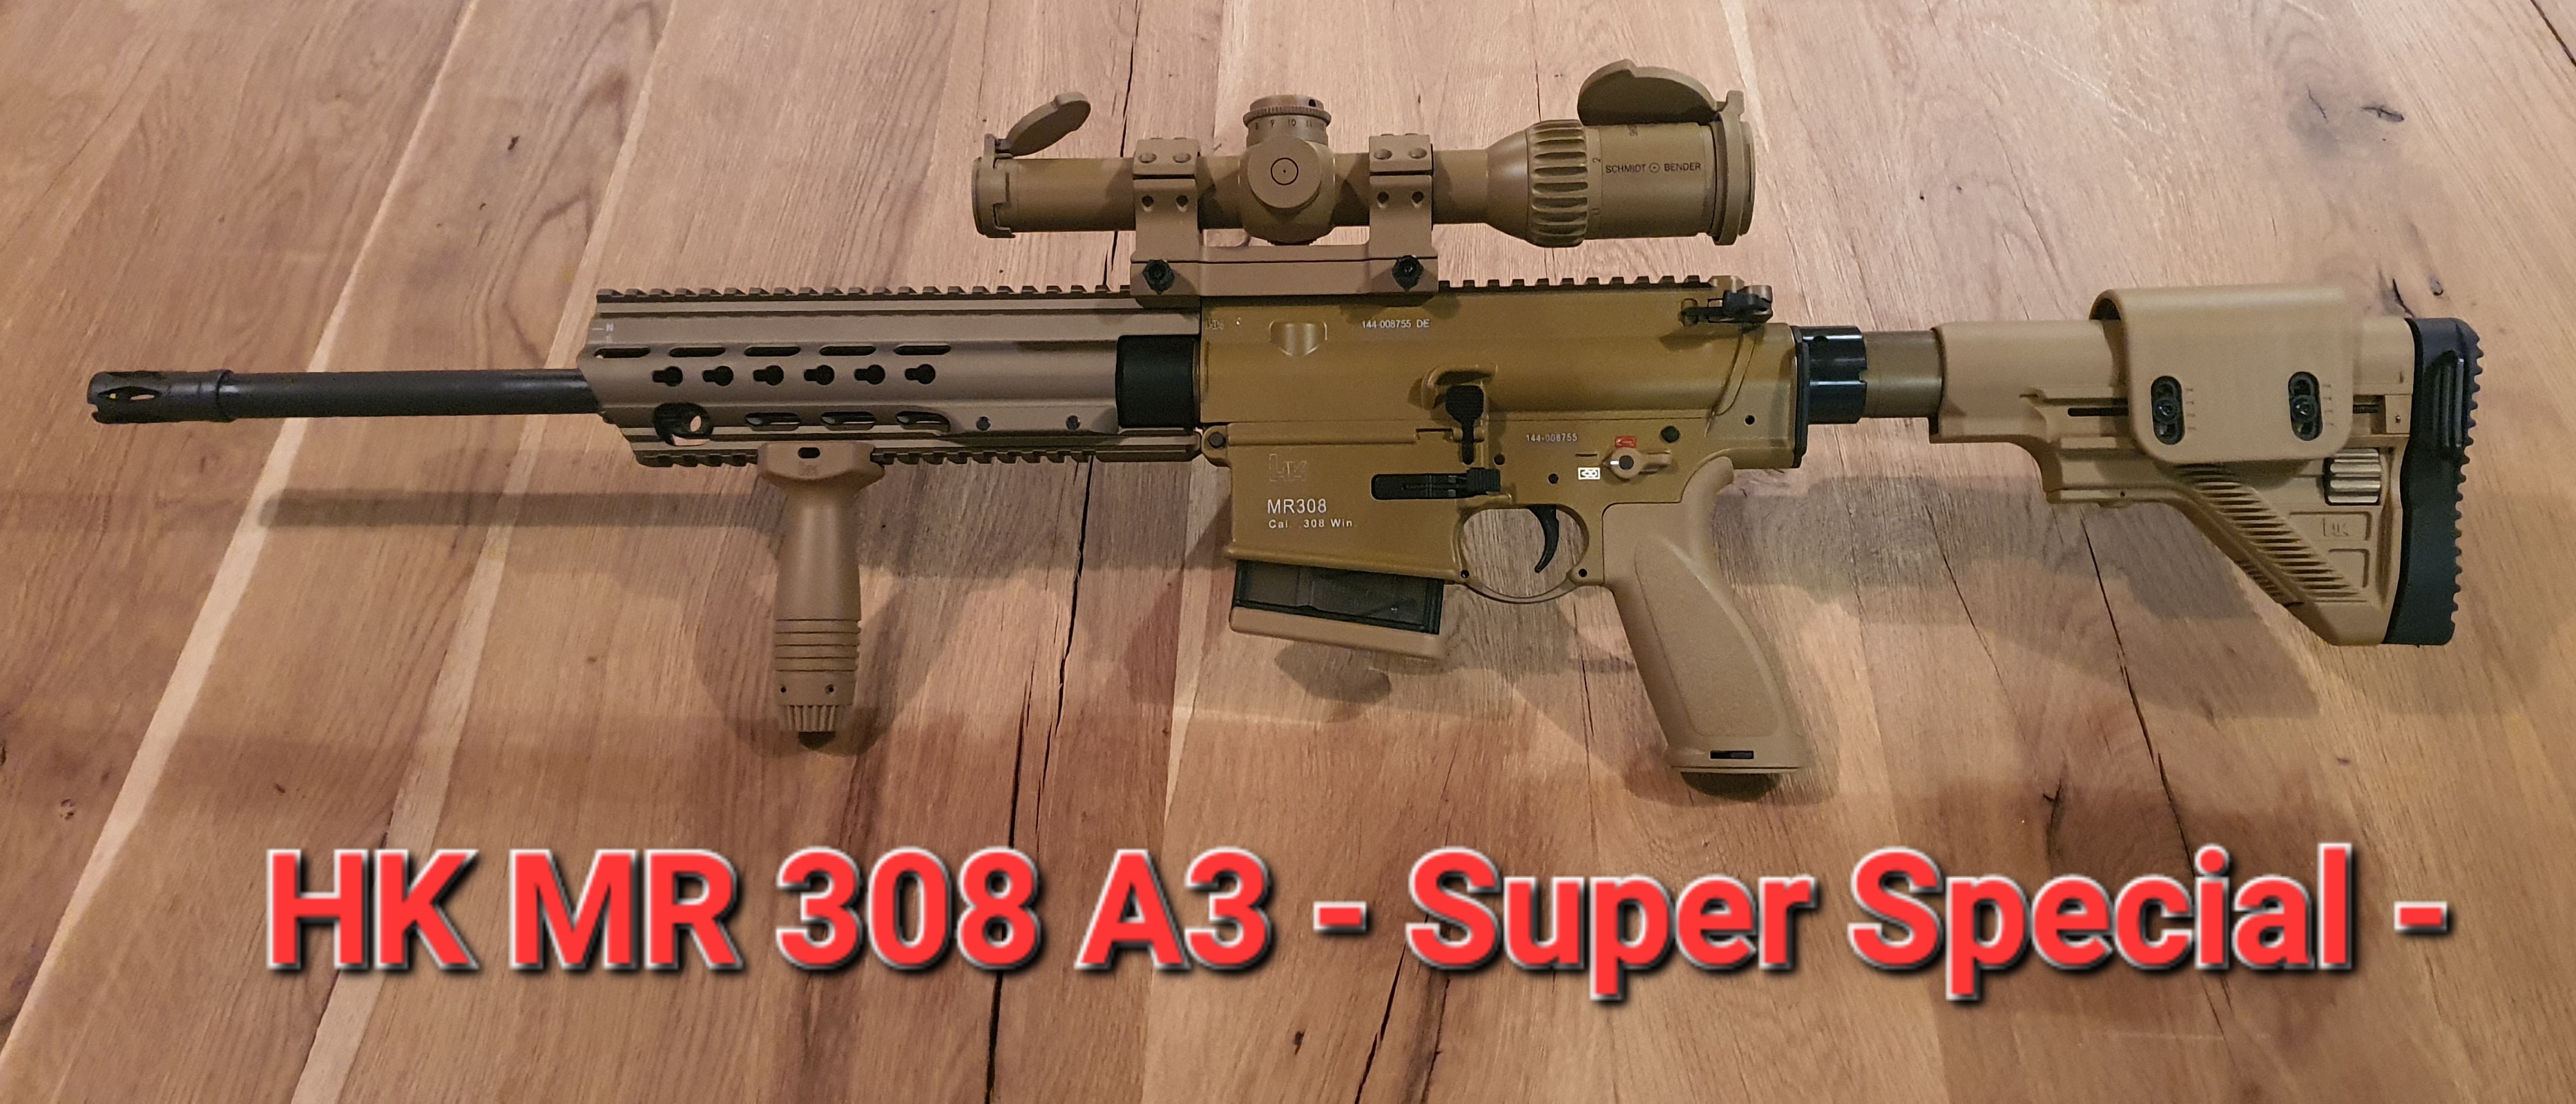 HK MR 308 A3 - SUPER SPECIAL -